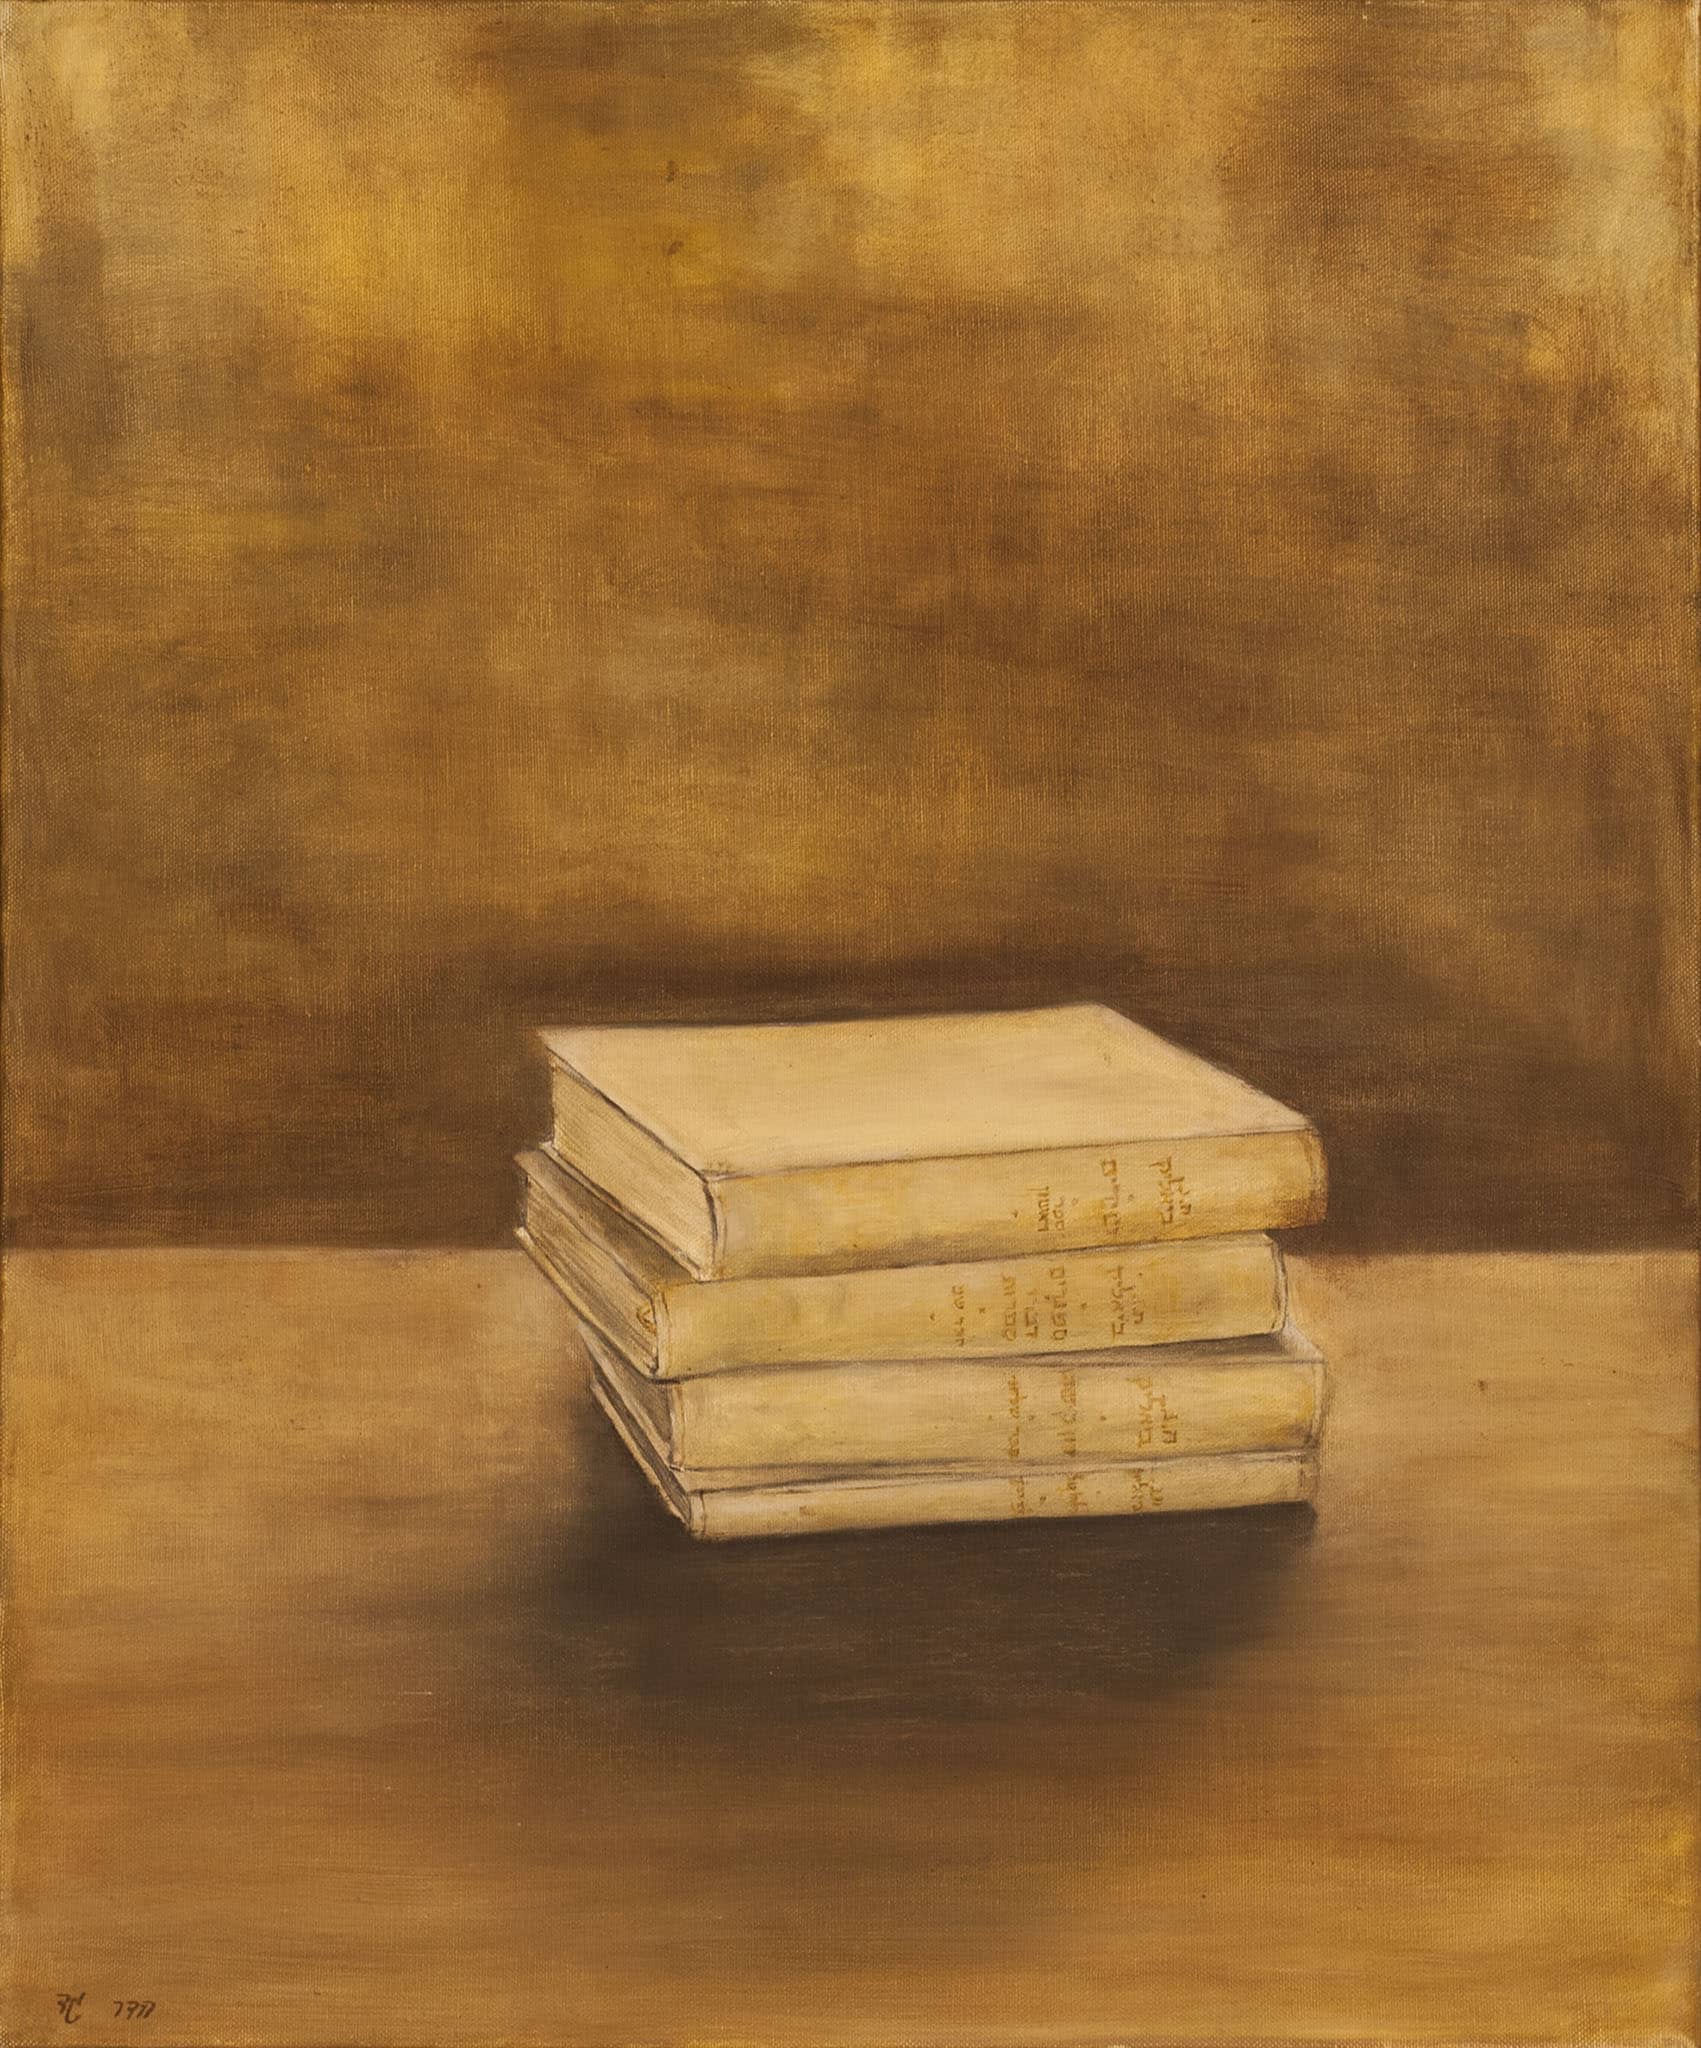 הדר גד, "ארבעה כרכים של ביאליק", 2001, שמן על בד, 50x60 ס"מ